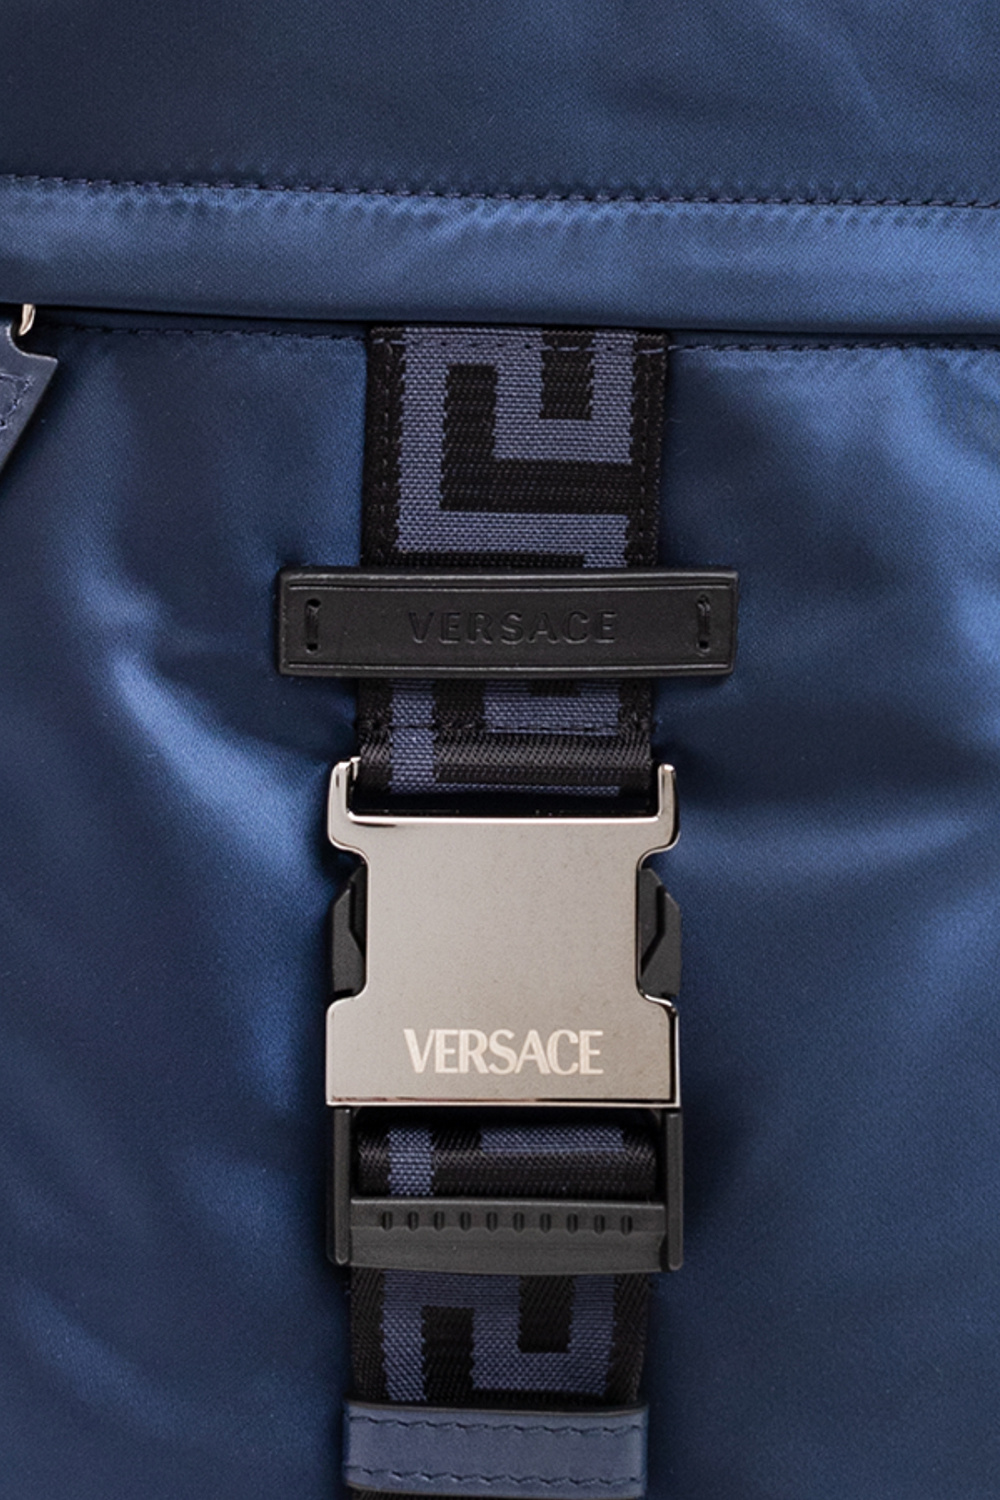 Versace One-shoulder PUMA backpack